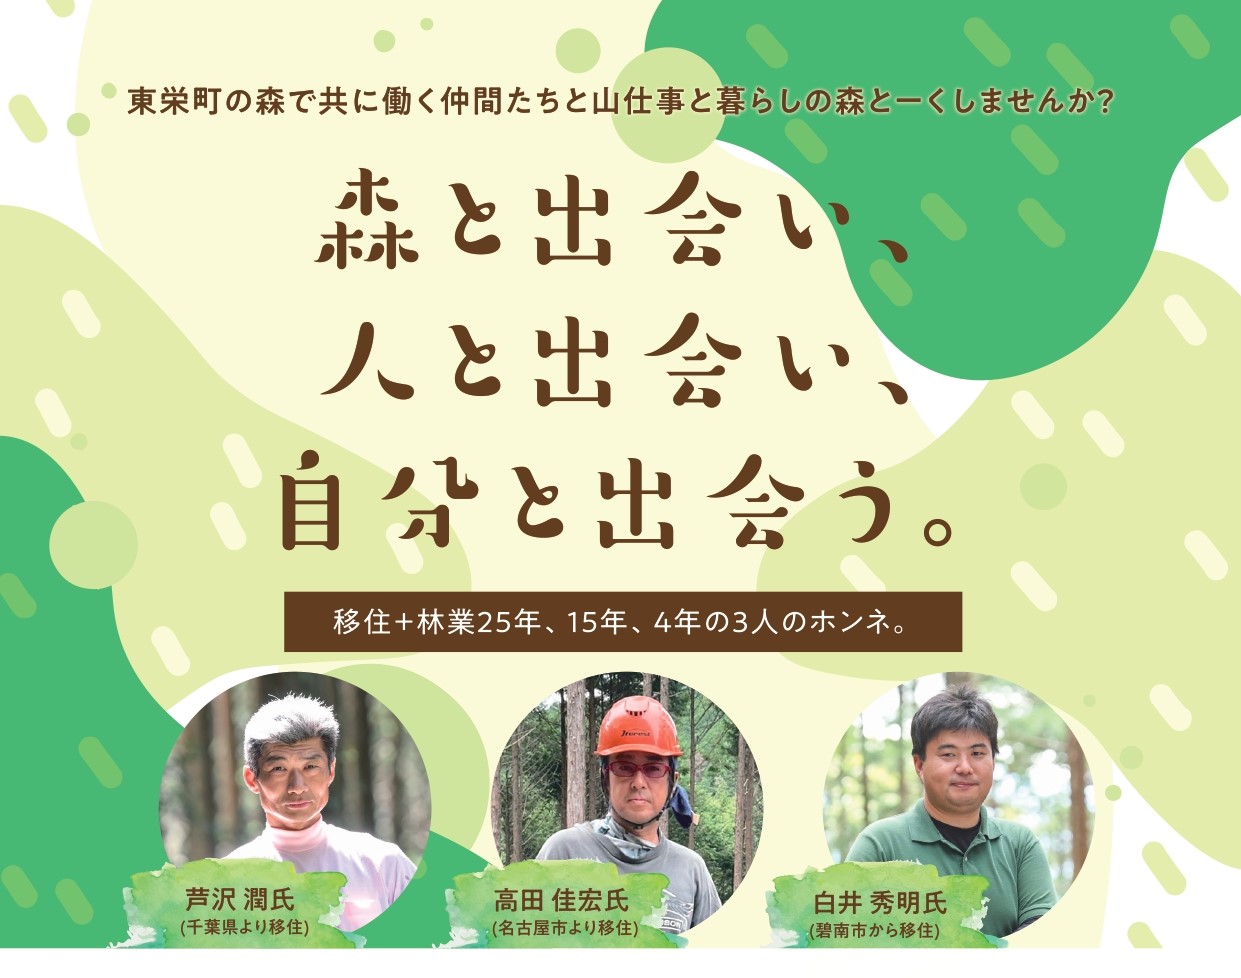 【東栄町で森のある暮らし】山仕事と暮らしについて「森とーく」しませんか？(11/19開催) | 移住関連イベント情報